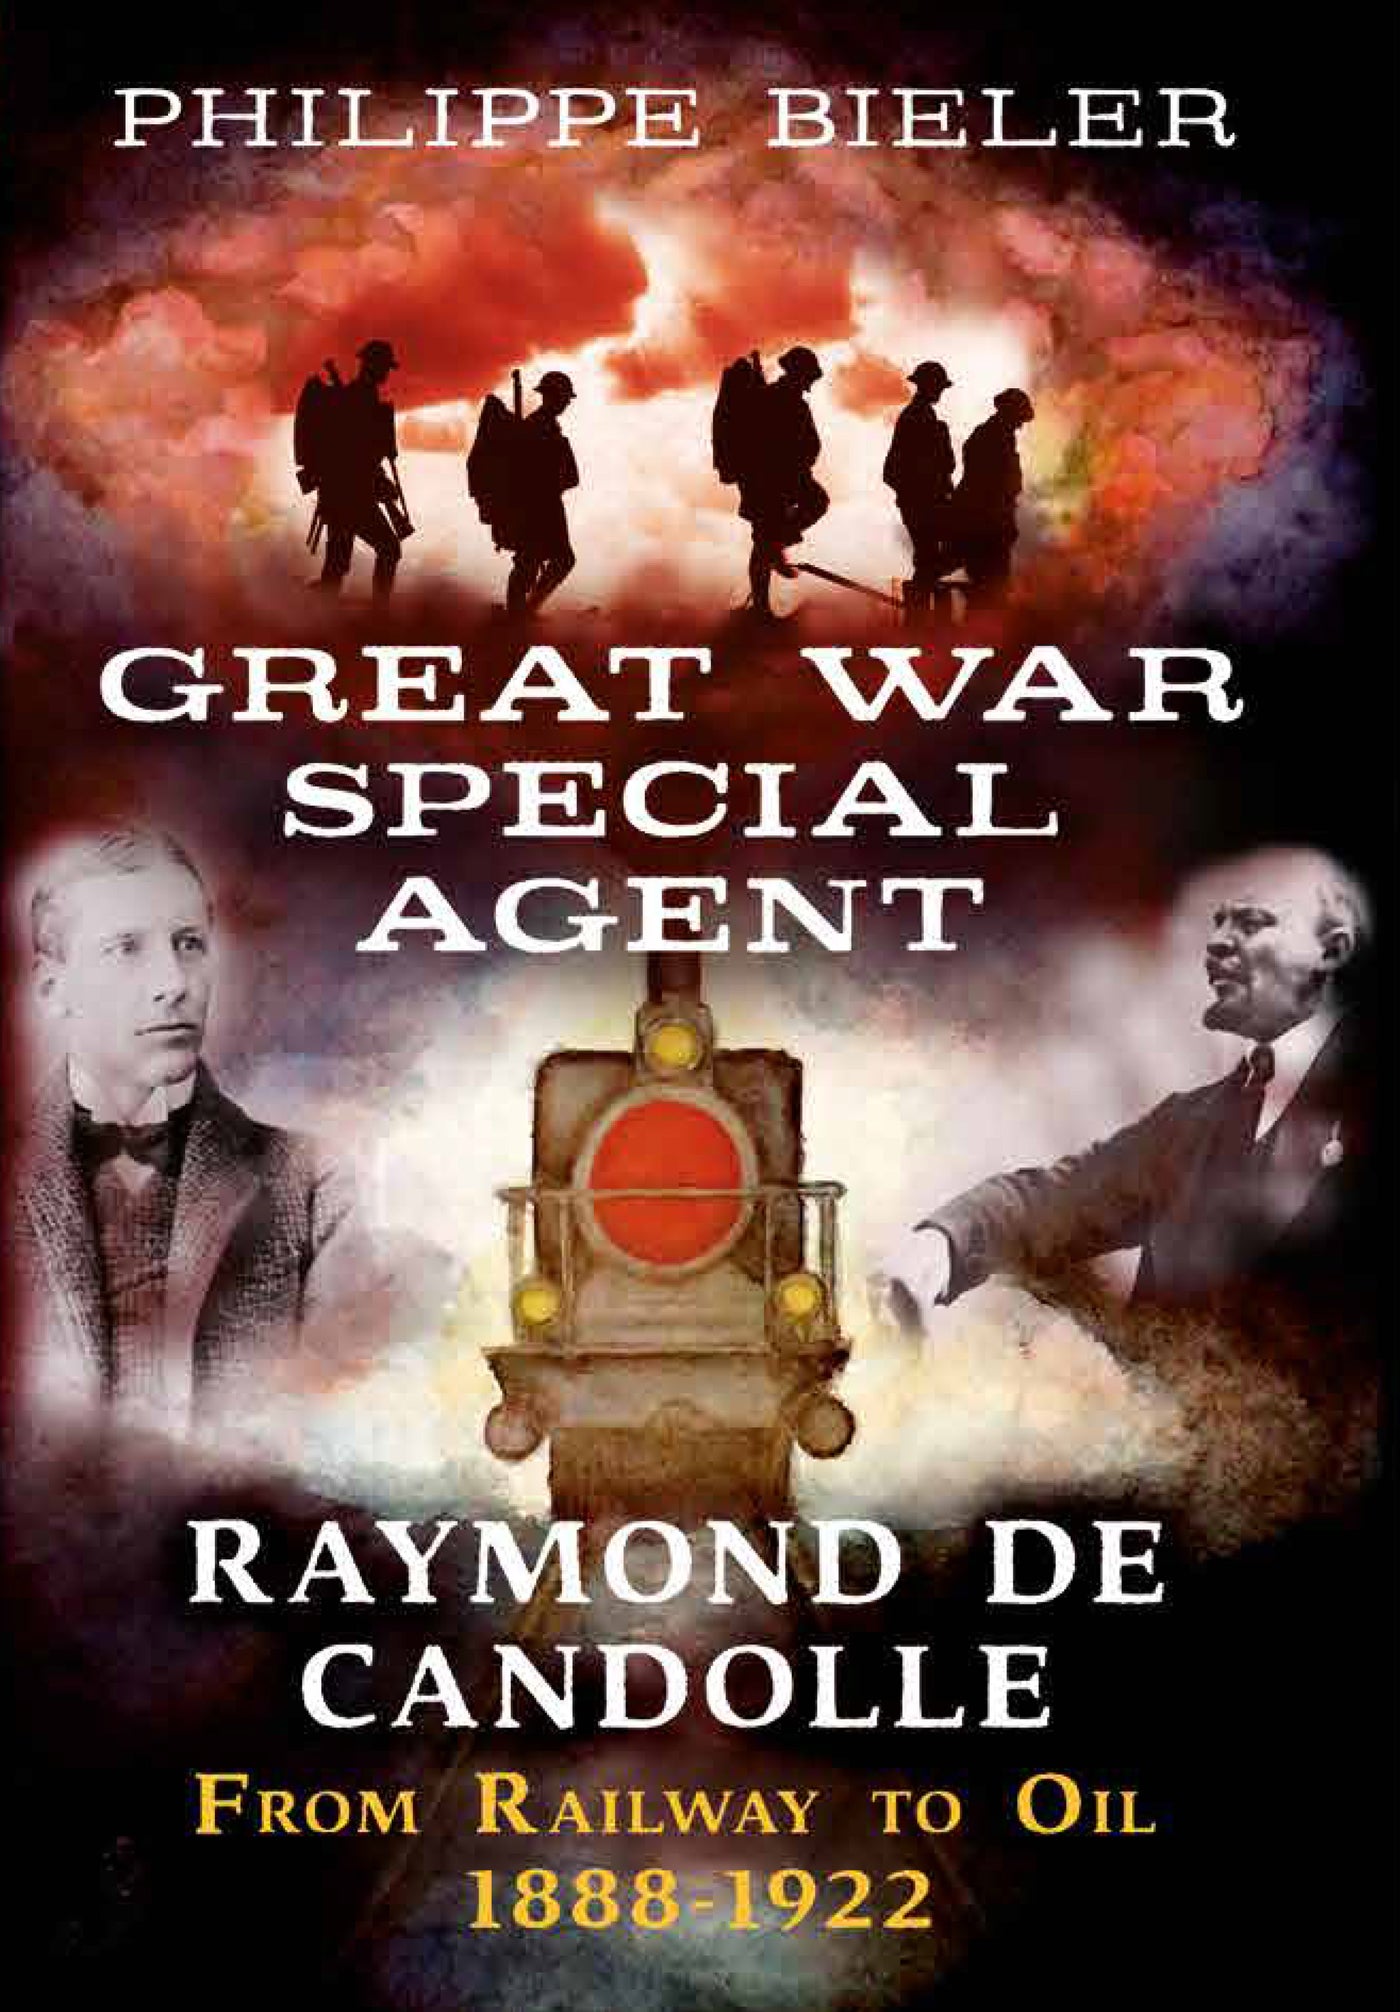 Der Spezialagent des Ersten Weltkriegs, Raymond de Candolle 